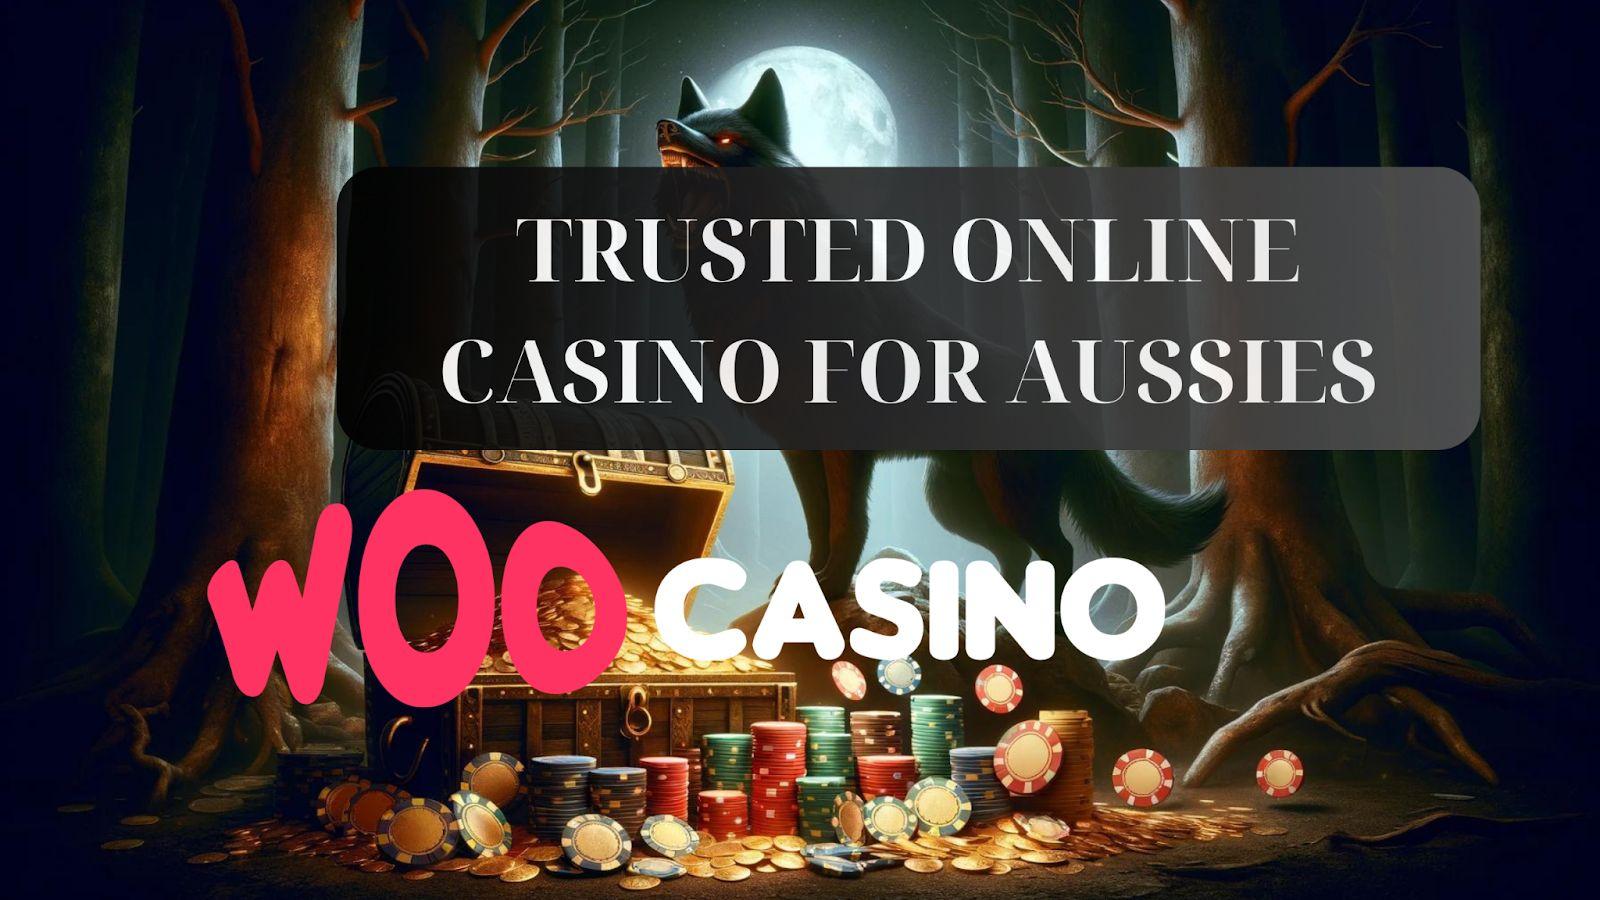 Woo Casino - A escolha de confiança dos australianos